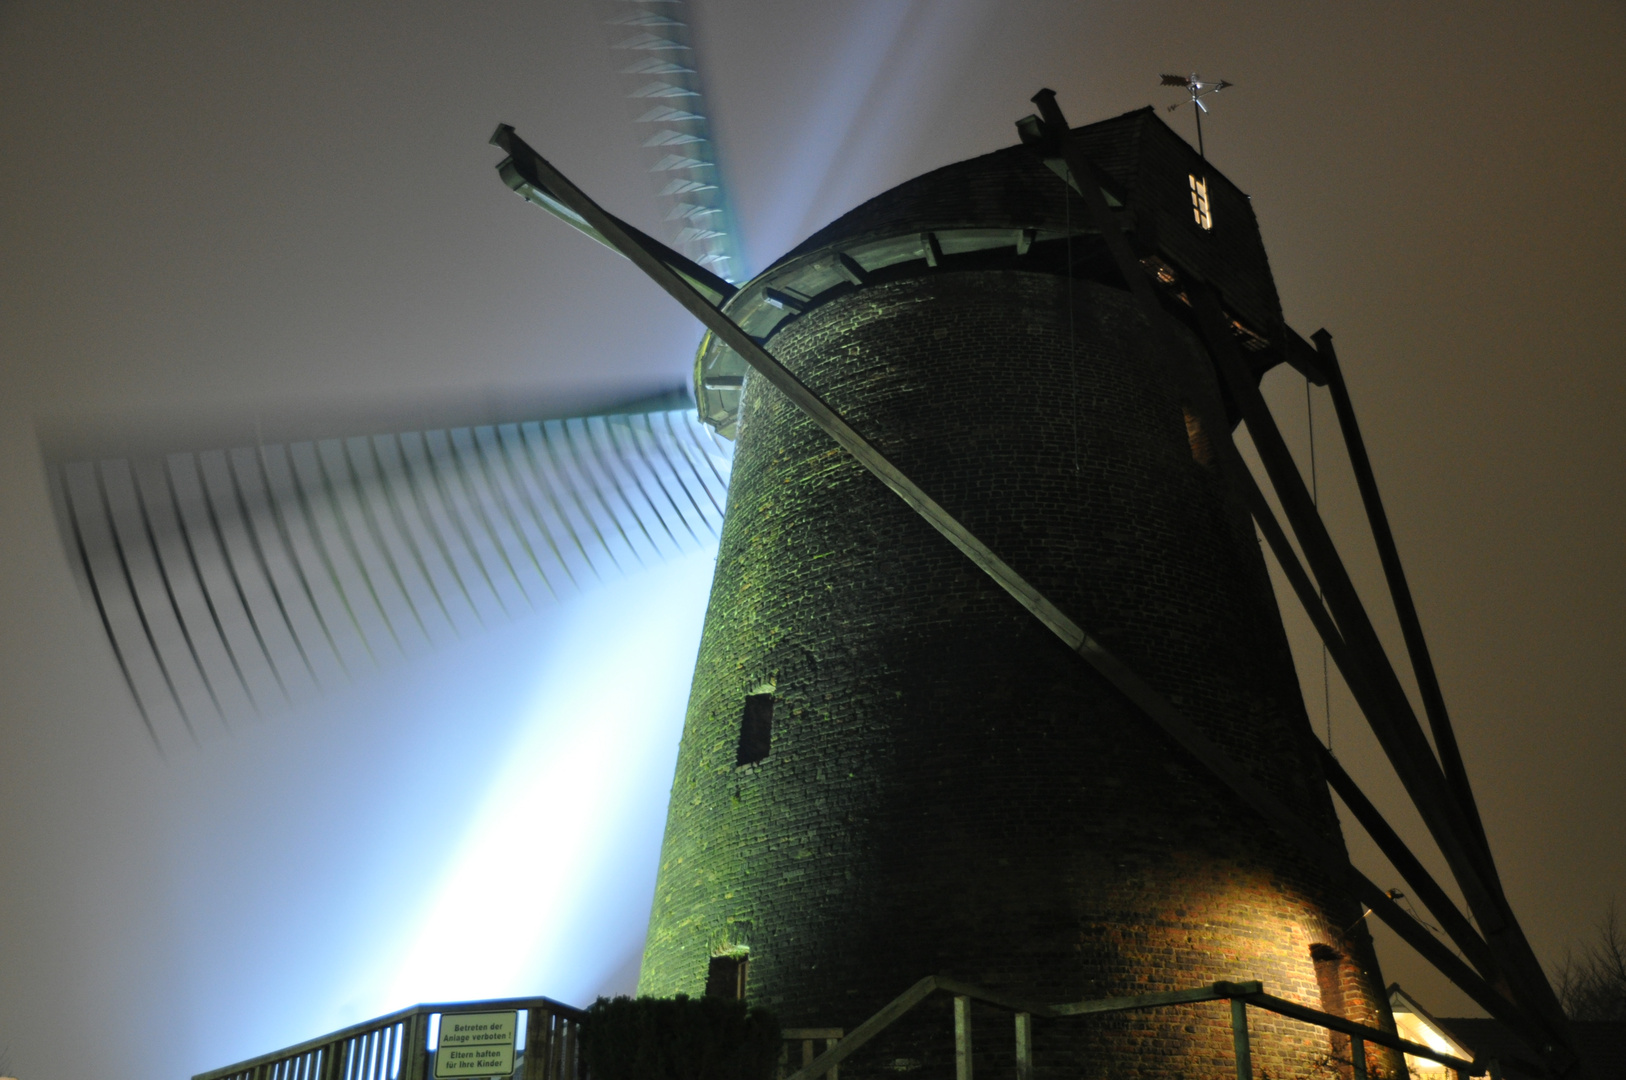 Windmühle im Lichterzauber